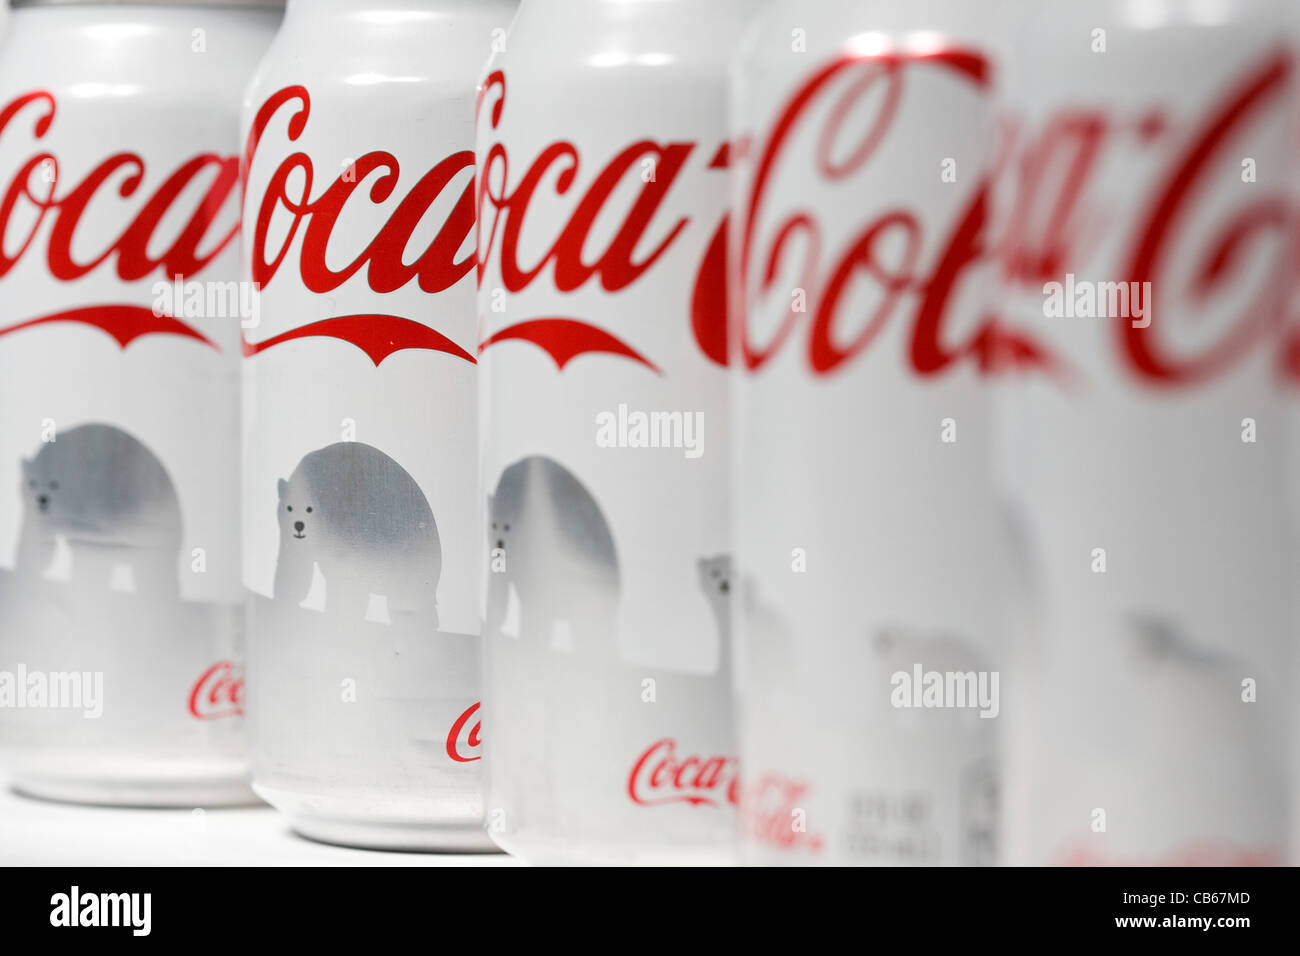 The Coca-Cola polar bear can.  Stock Photo